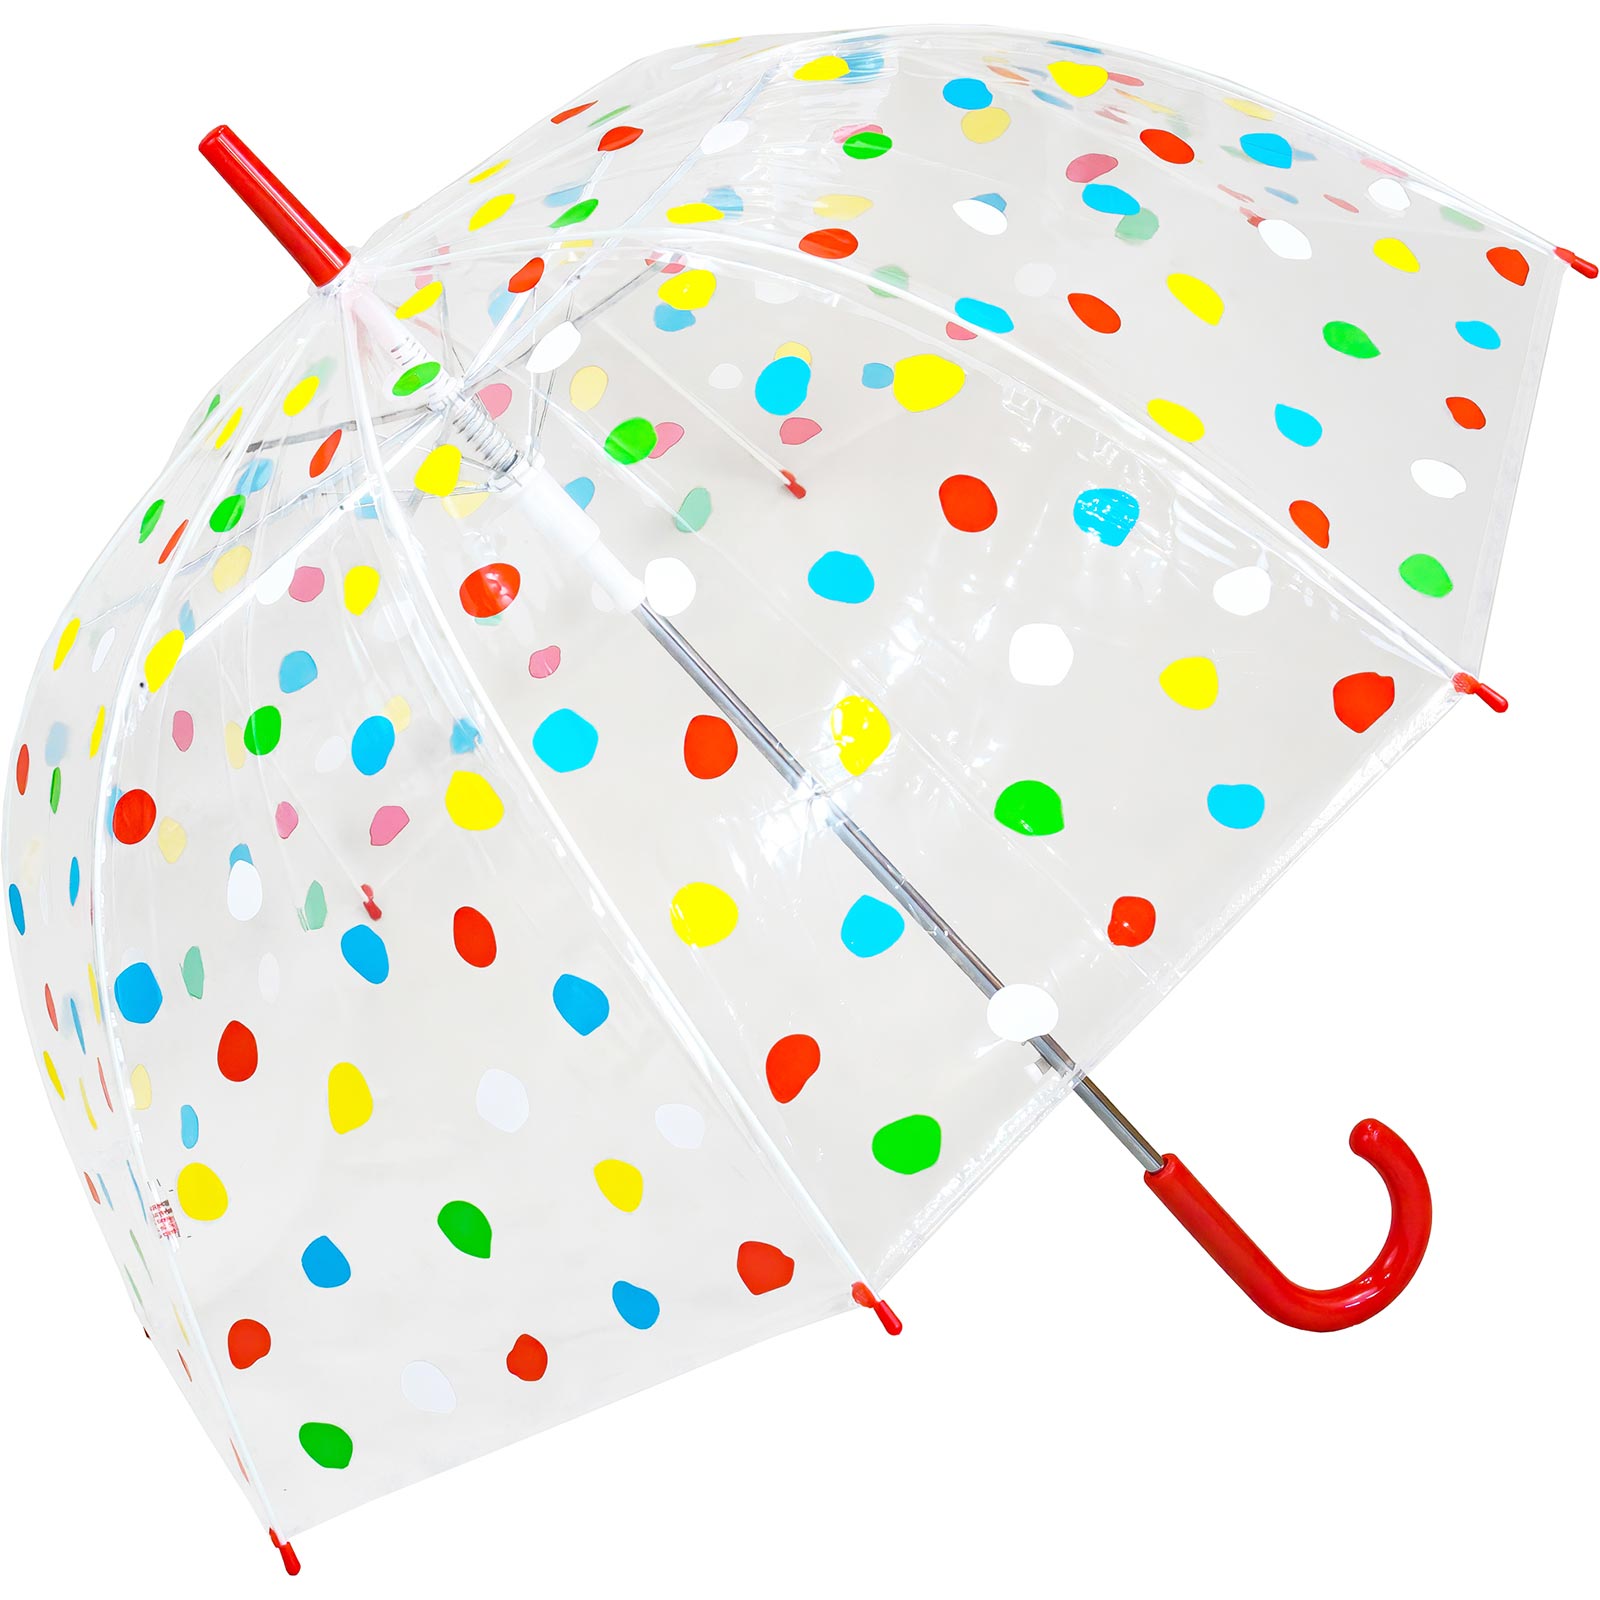 Susino Bright Polka Dot Dome Umbrella